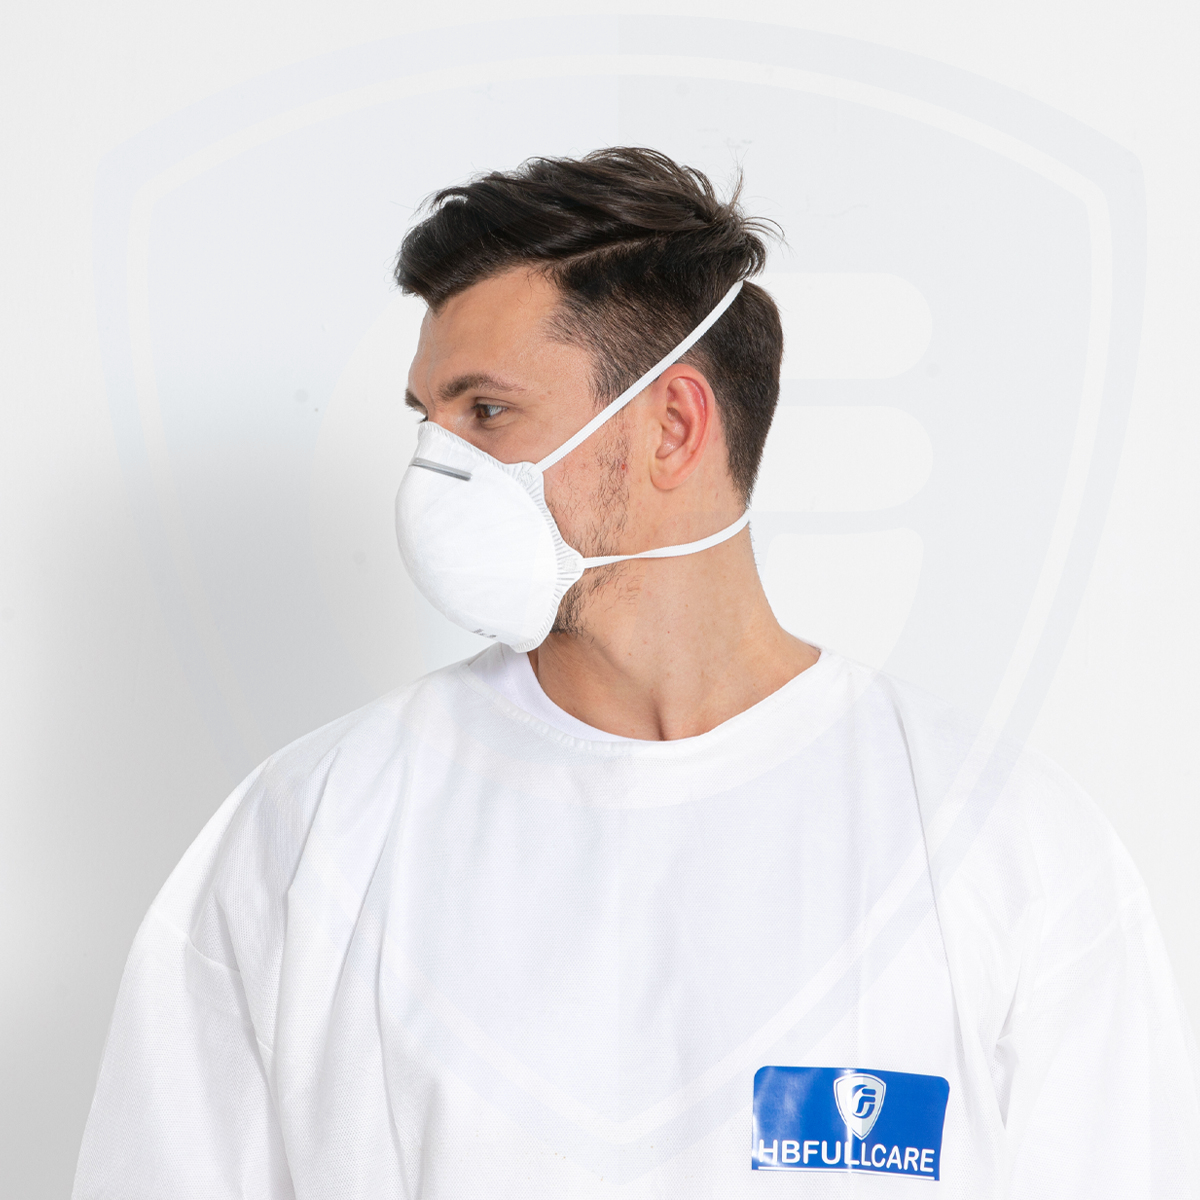 Vente en gros jetables de haute qualité En149 FFP1 Masque respiratoire filtré